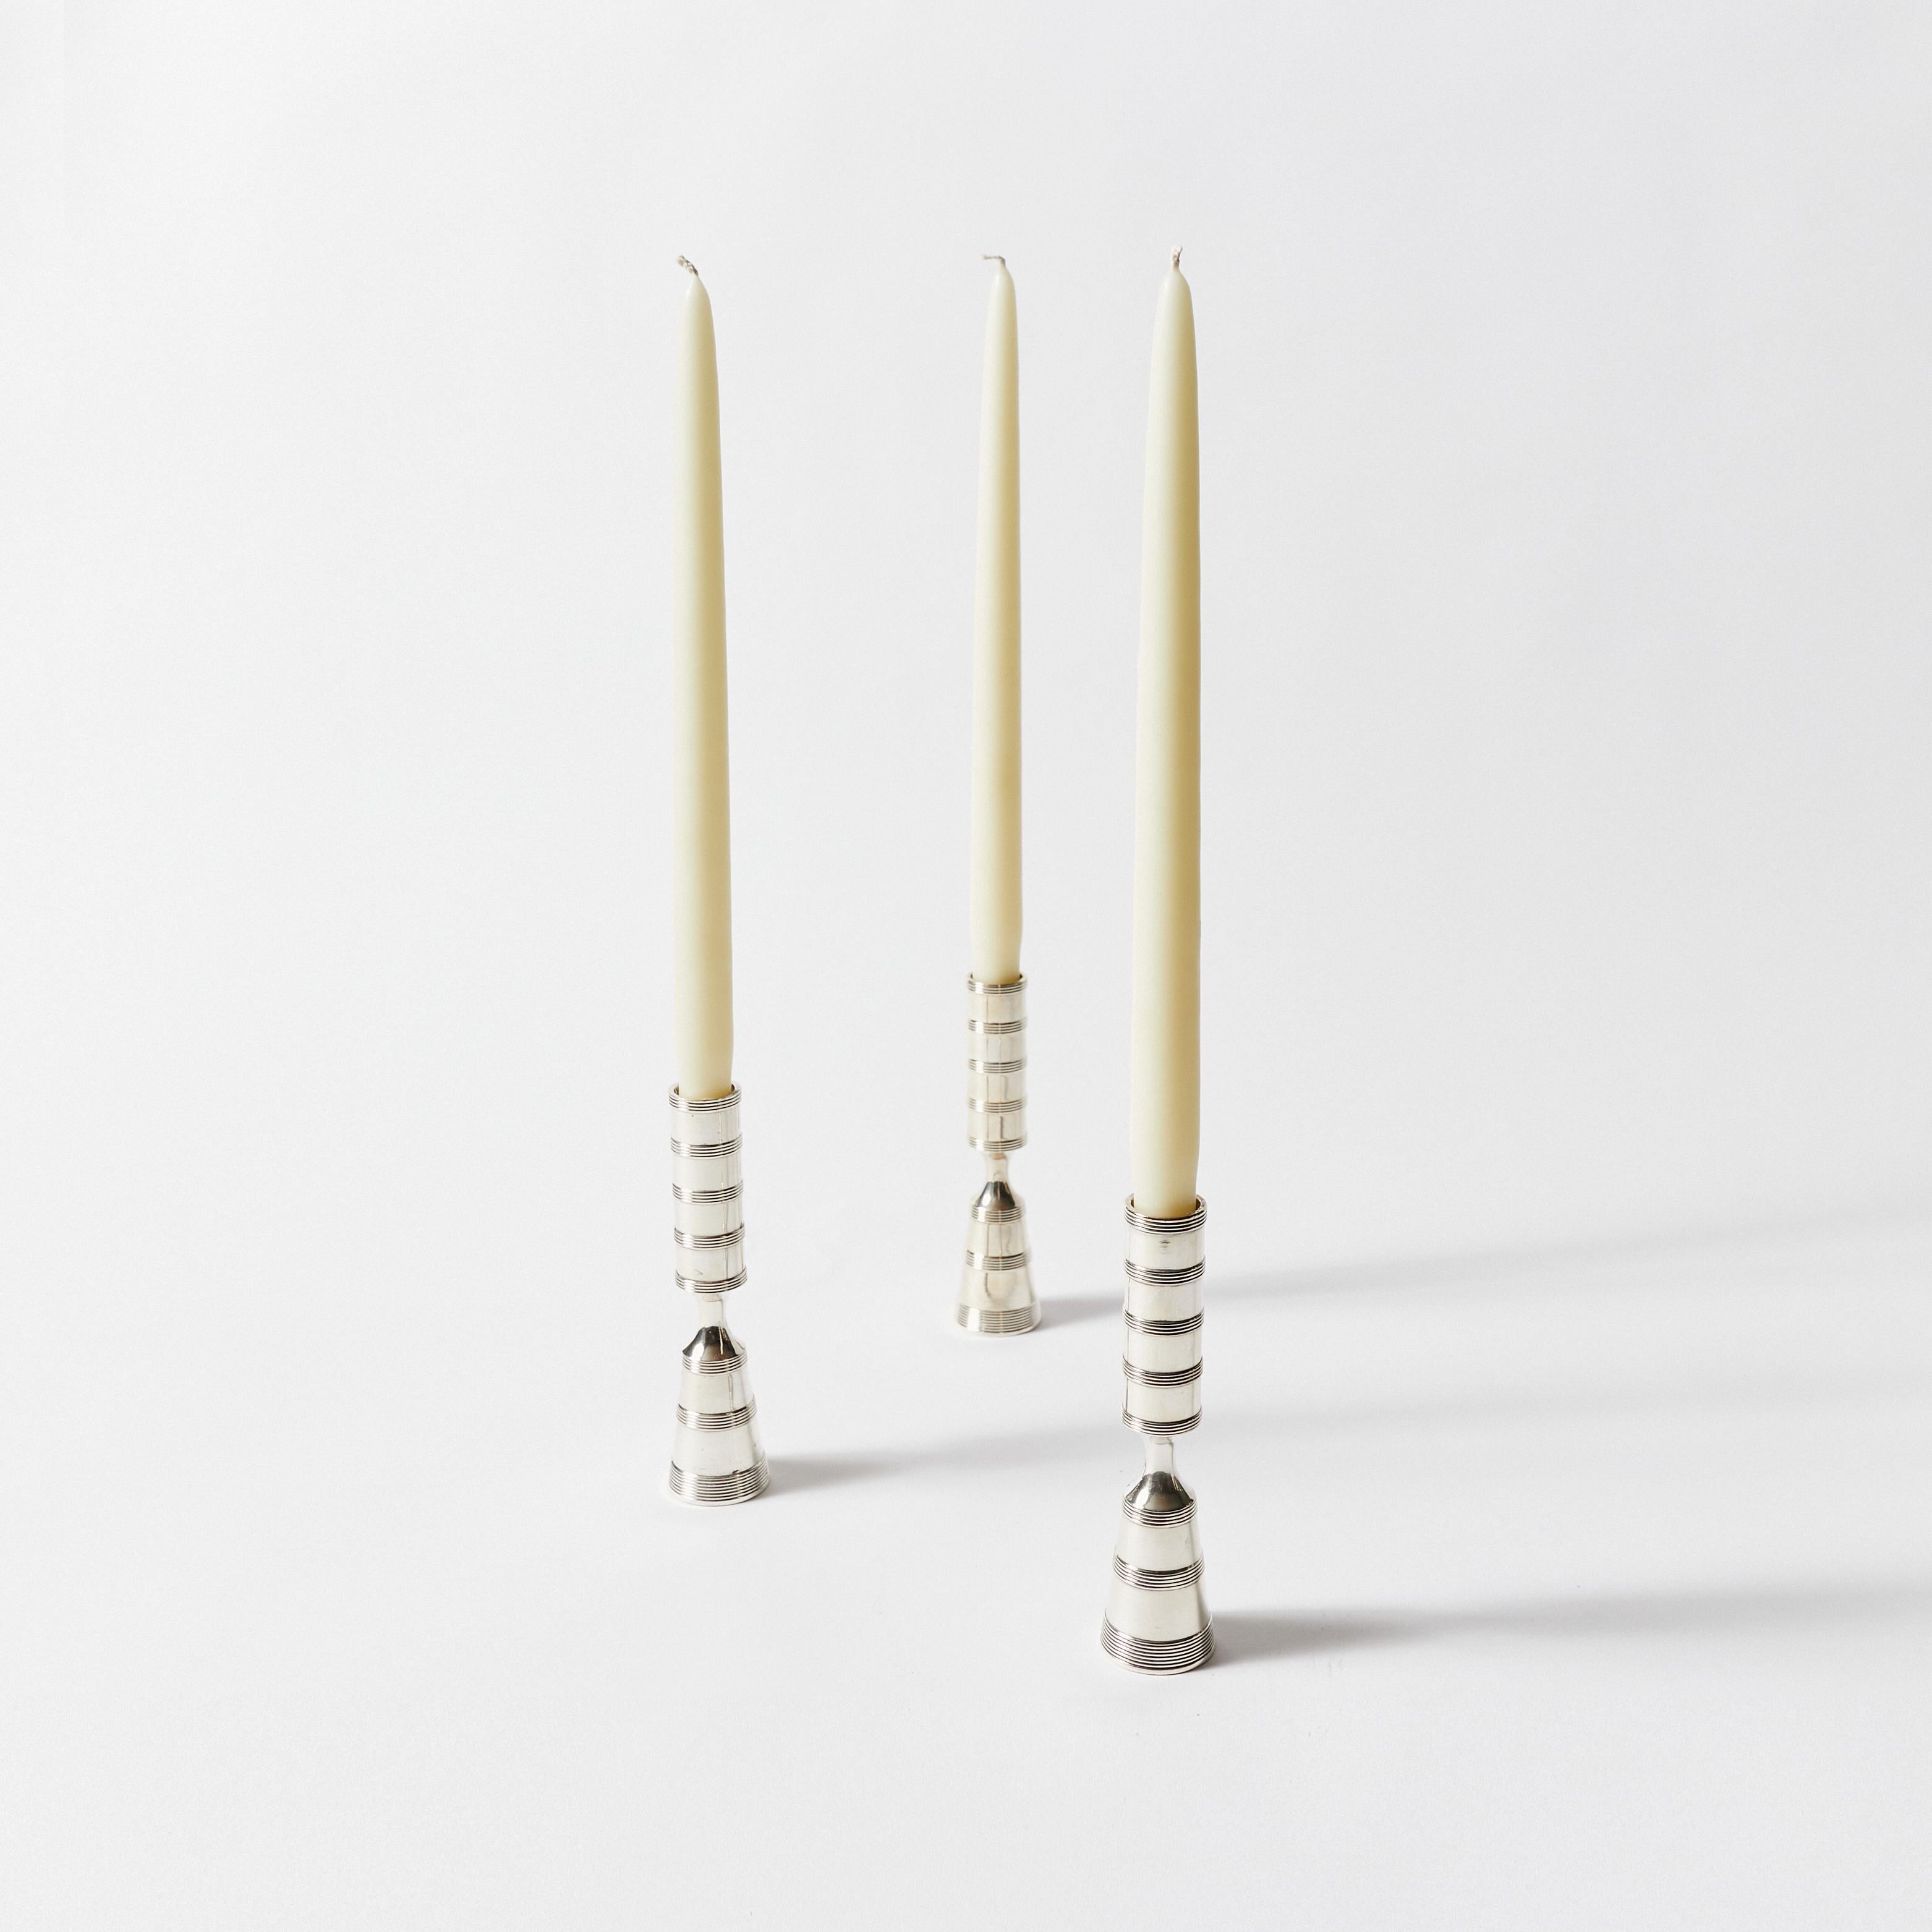 Ensemble de trente-huit chandeliers pilar en métal argenté. Conçu par Jens Harald Quistgaard pour Dansk Designs Copenhagen.
    